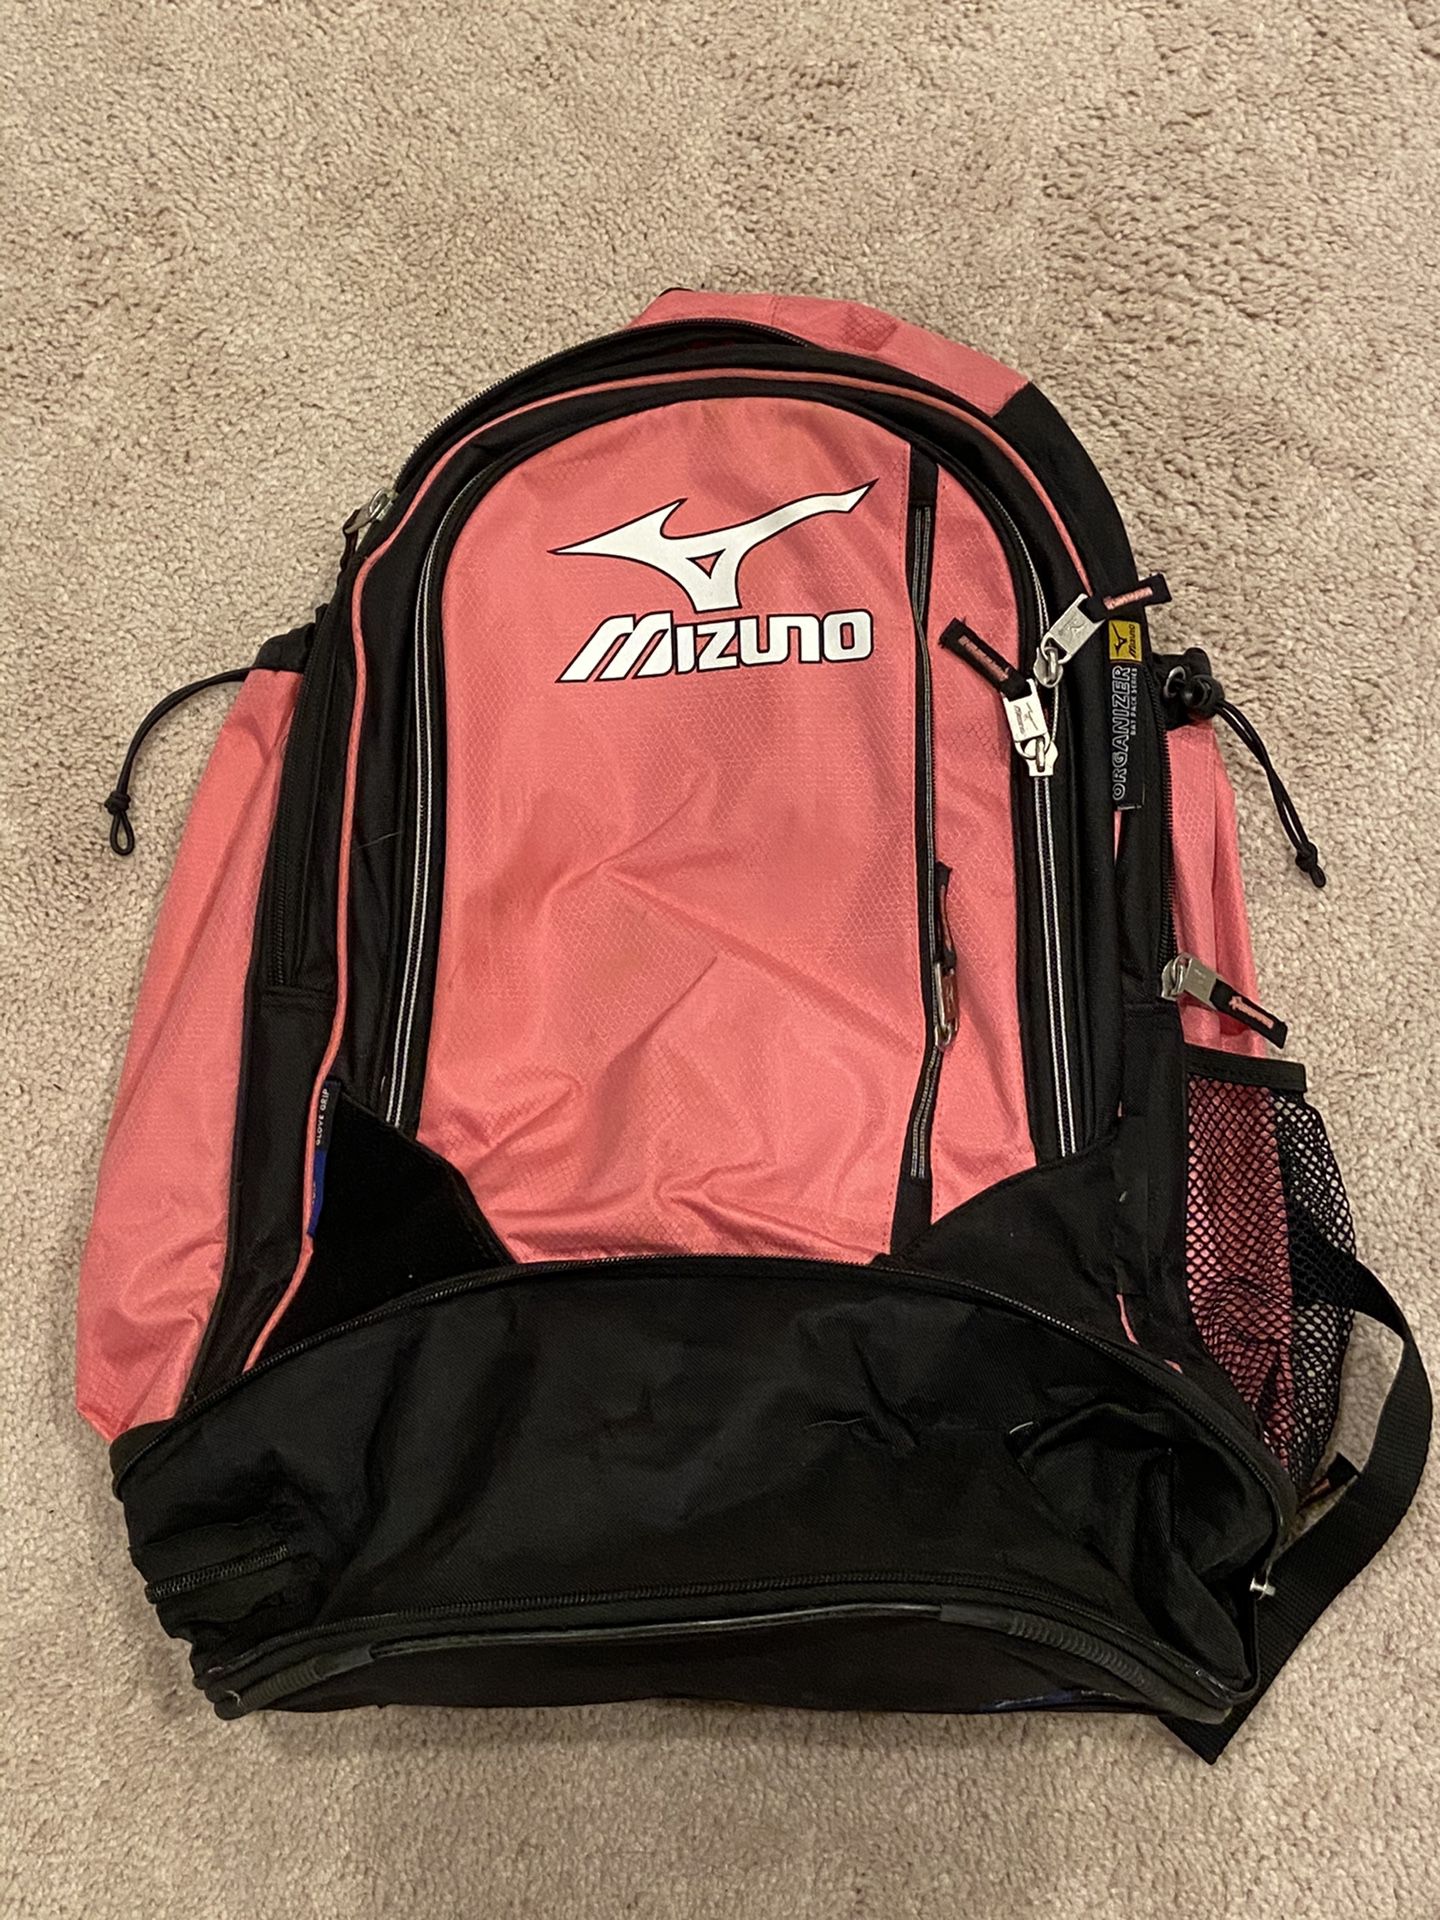 Mizuno softball bat backpack